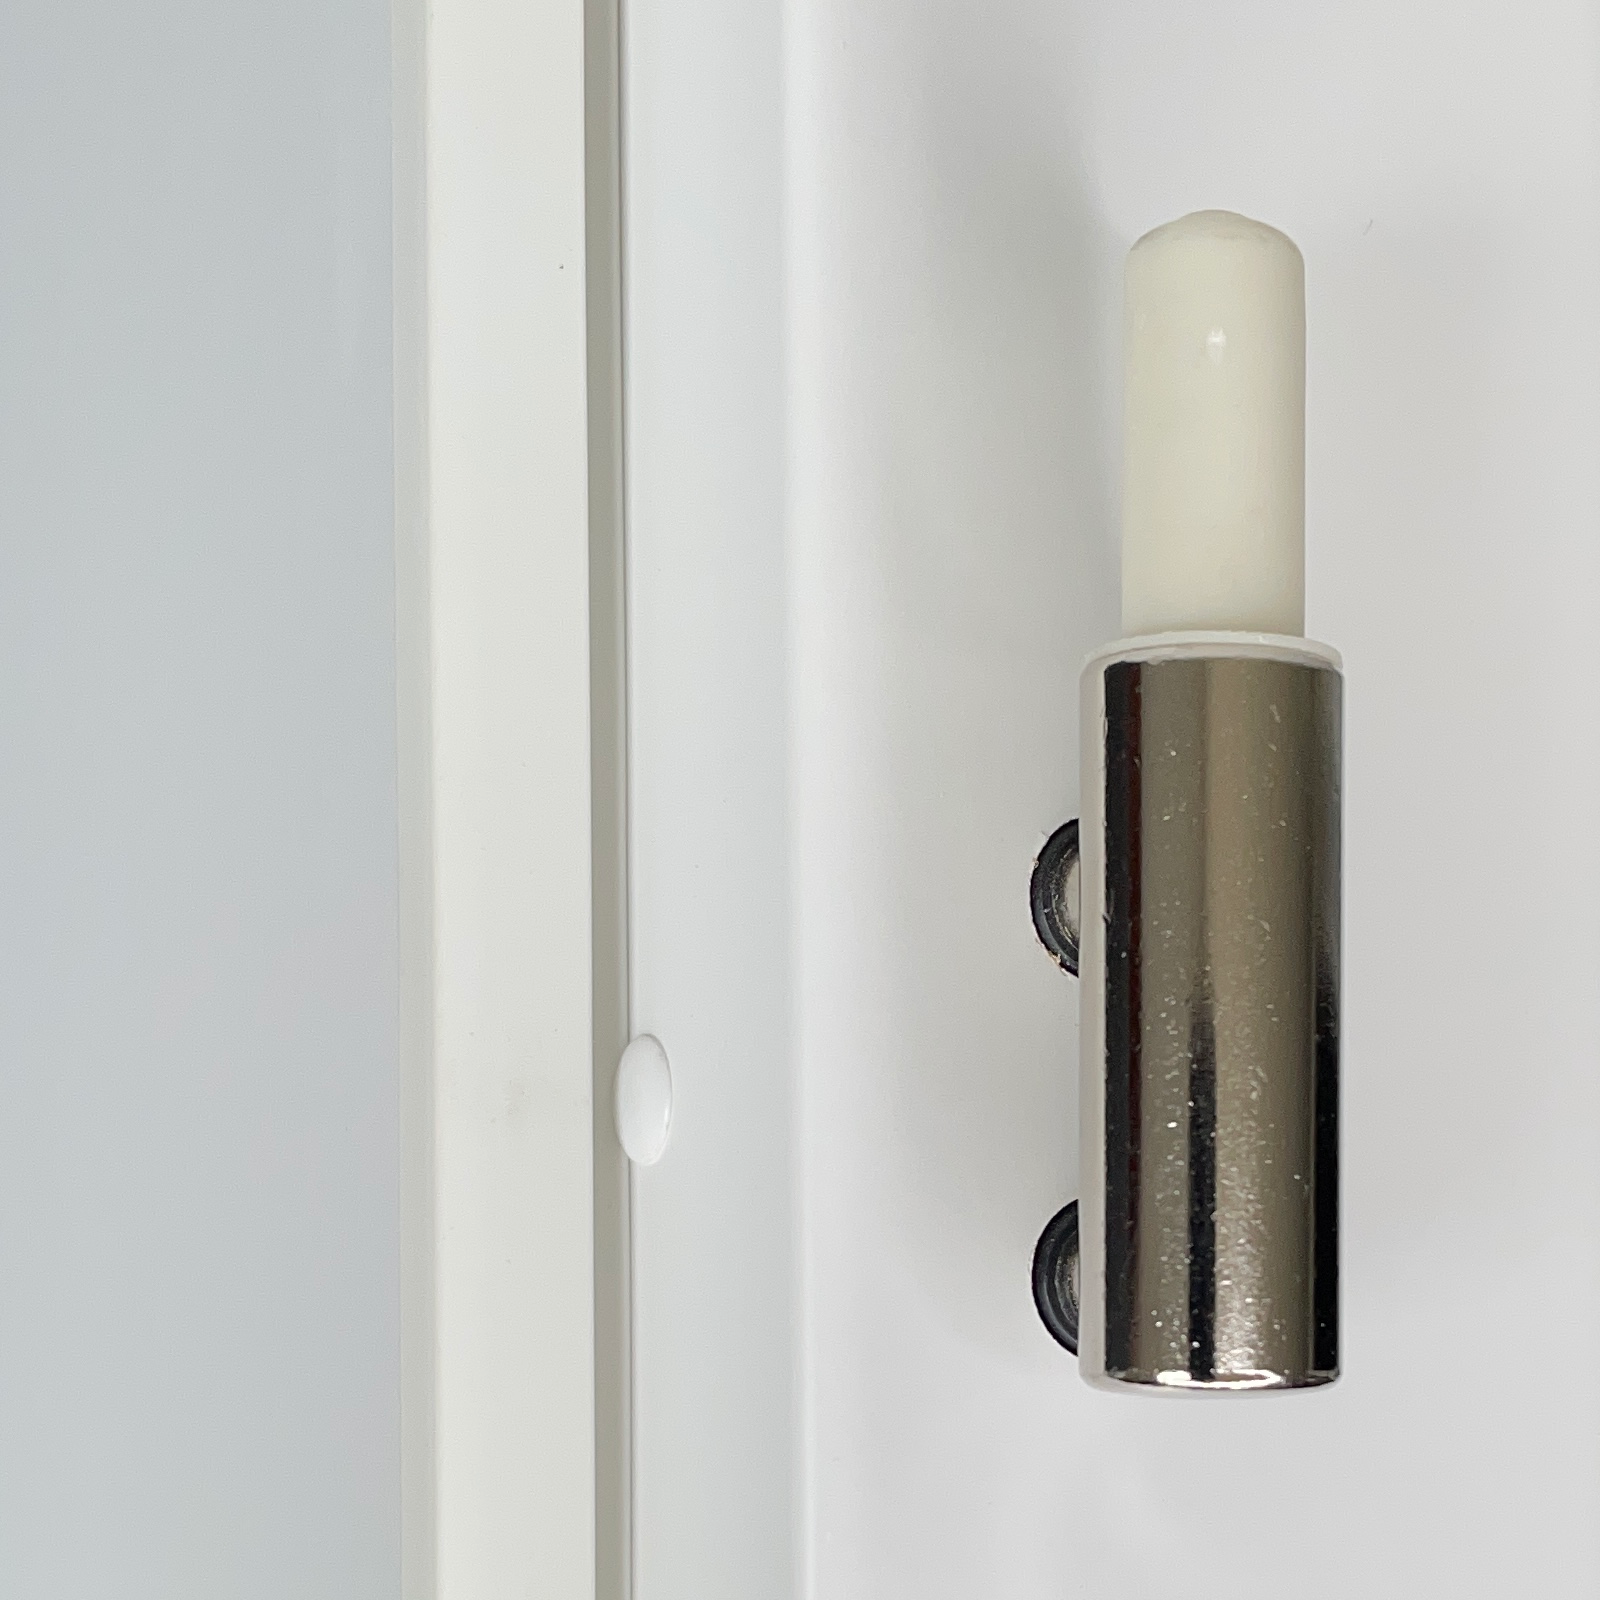 Zimmertür mit Zarge brillant-weiß Stiltür mit 3 Kassetten und Lichtausschnitt Designkante - Modell Stiltür M33LA3